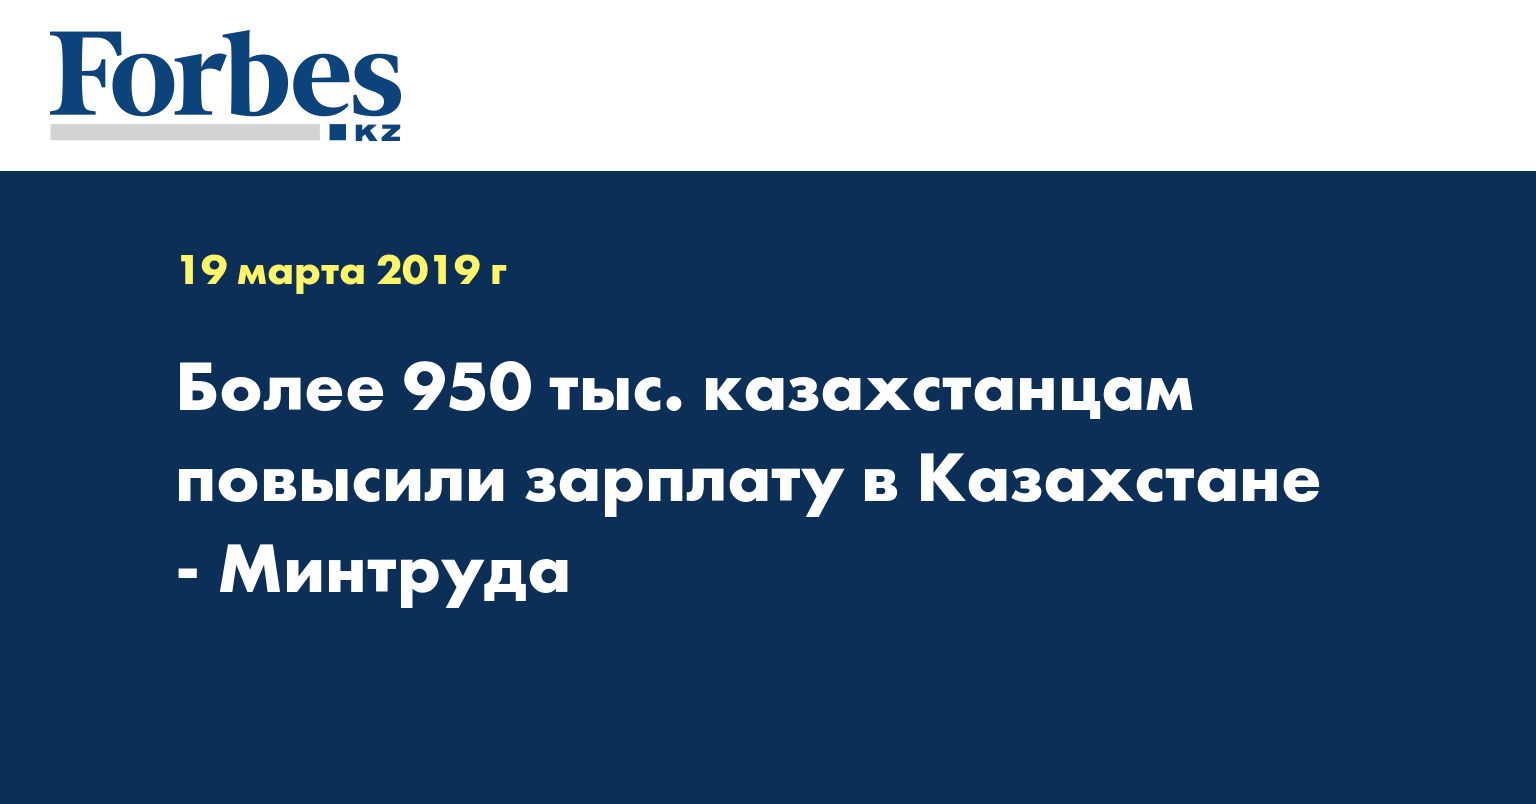 Более 950 тыс. казахстанцам повысили зарплату в Казахстане - Минтруда